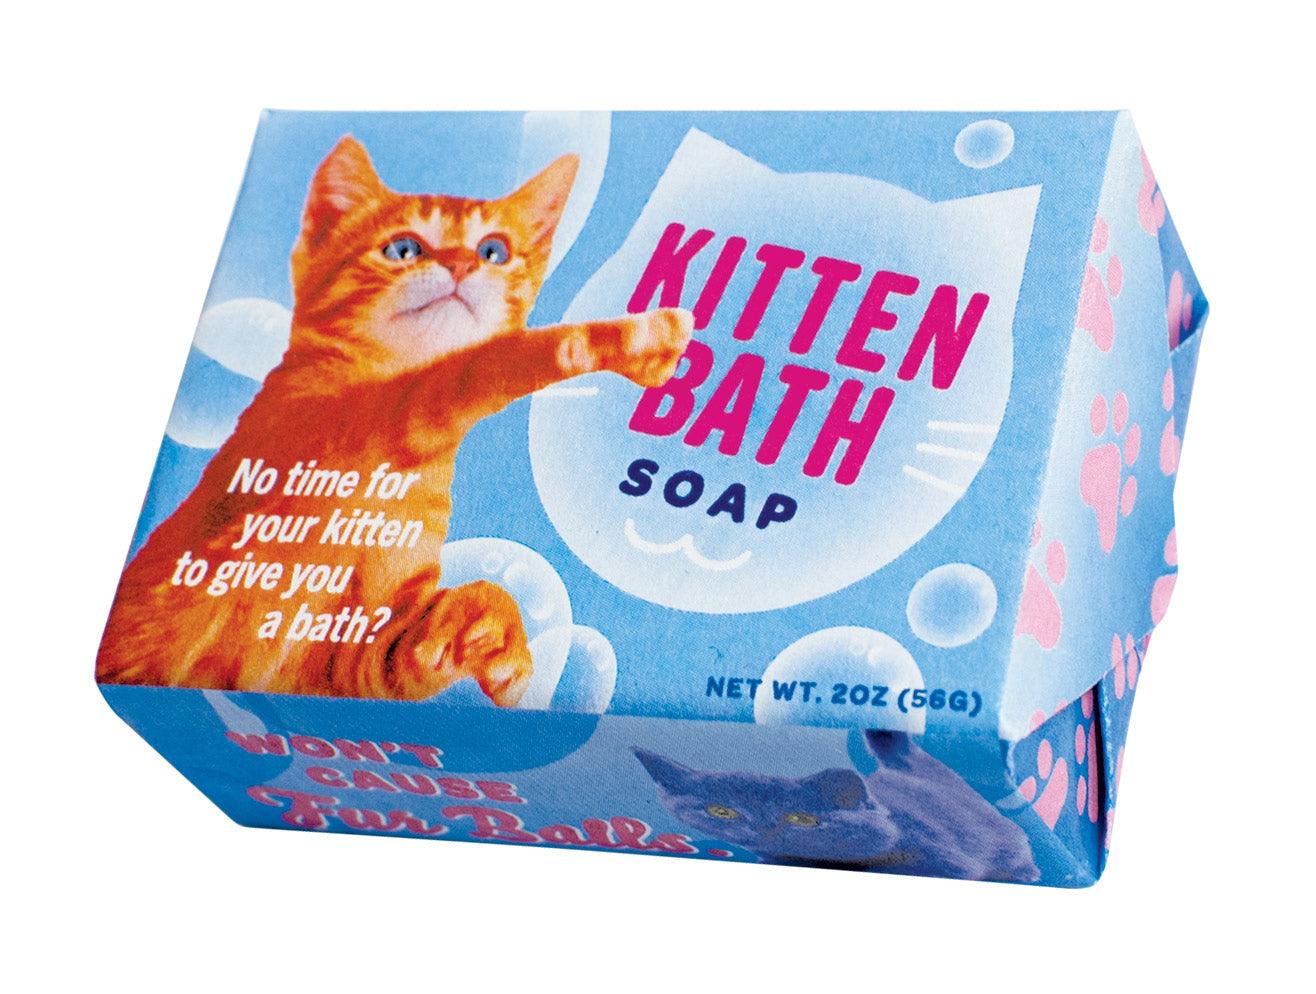 Kitten Bath Soap